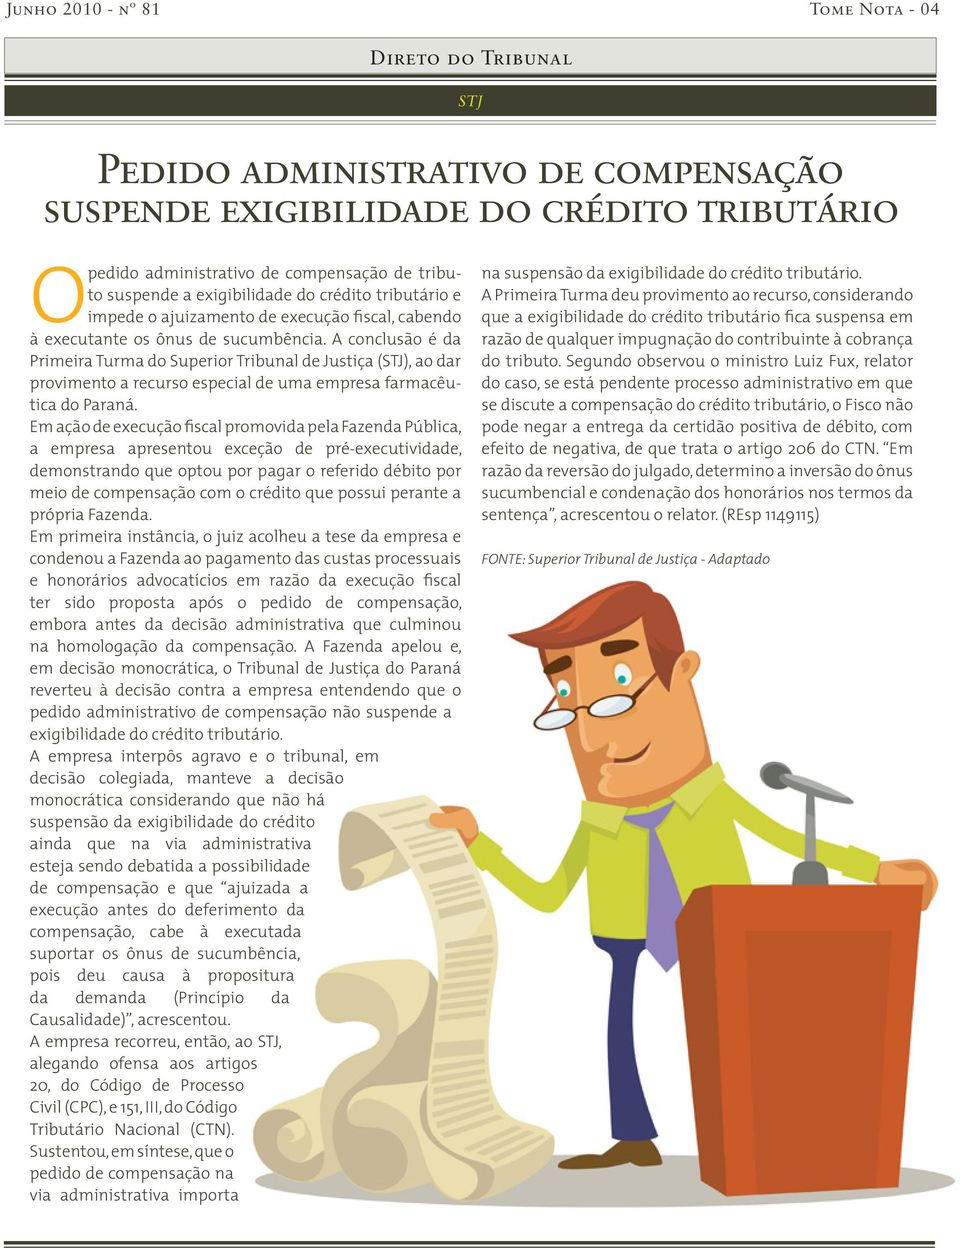 A conclusão é da Primeira Turma do Superior Tribunal de Justiça (STJ), ao dar provimento a recurso especial de uma empresa farmacêutica do Paraná.